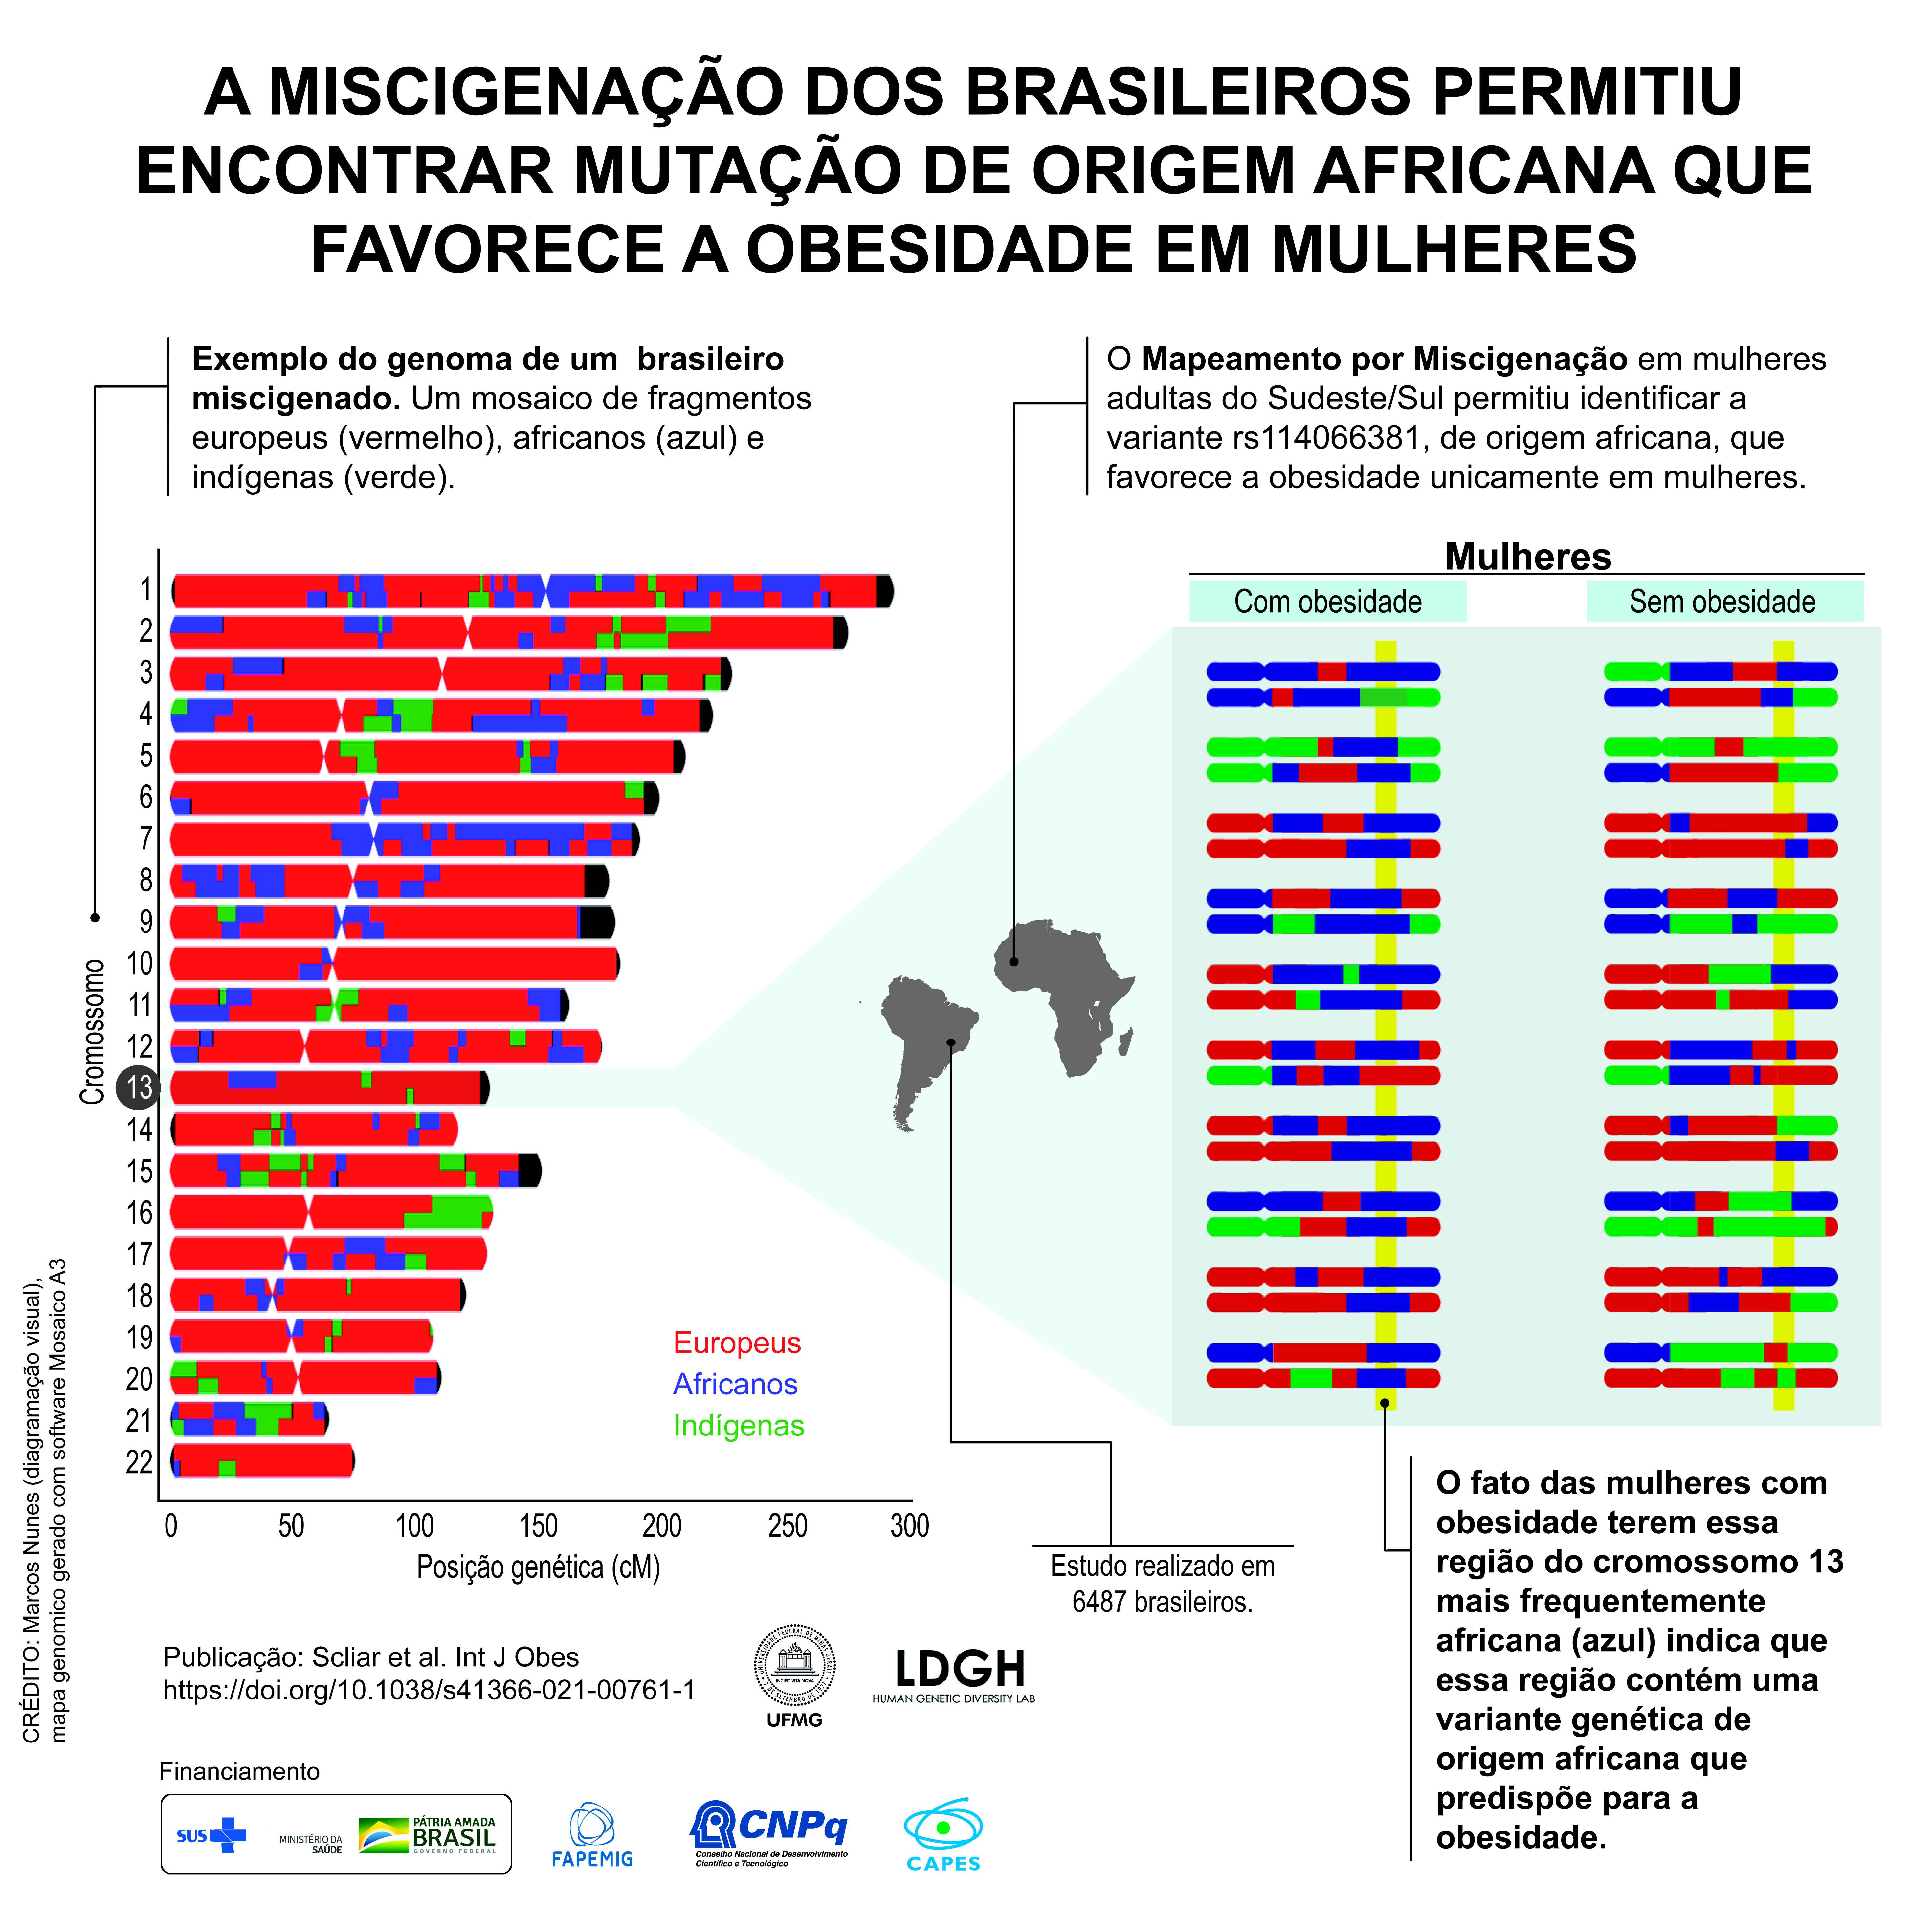 Infográfico elaborado pelo grupo de pesquisa exemplifica a miscigenação do genoma brasileiro